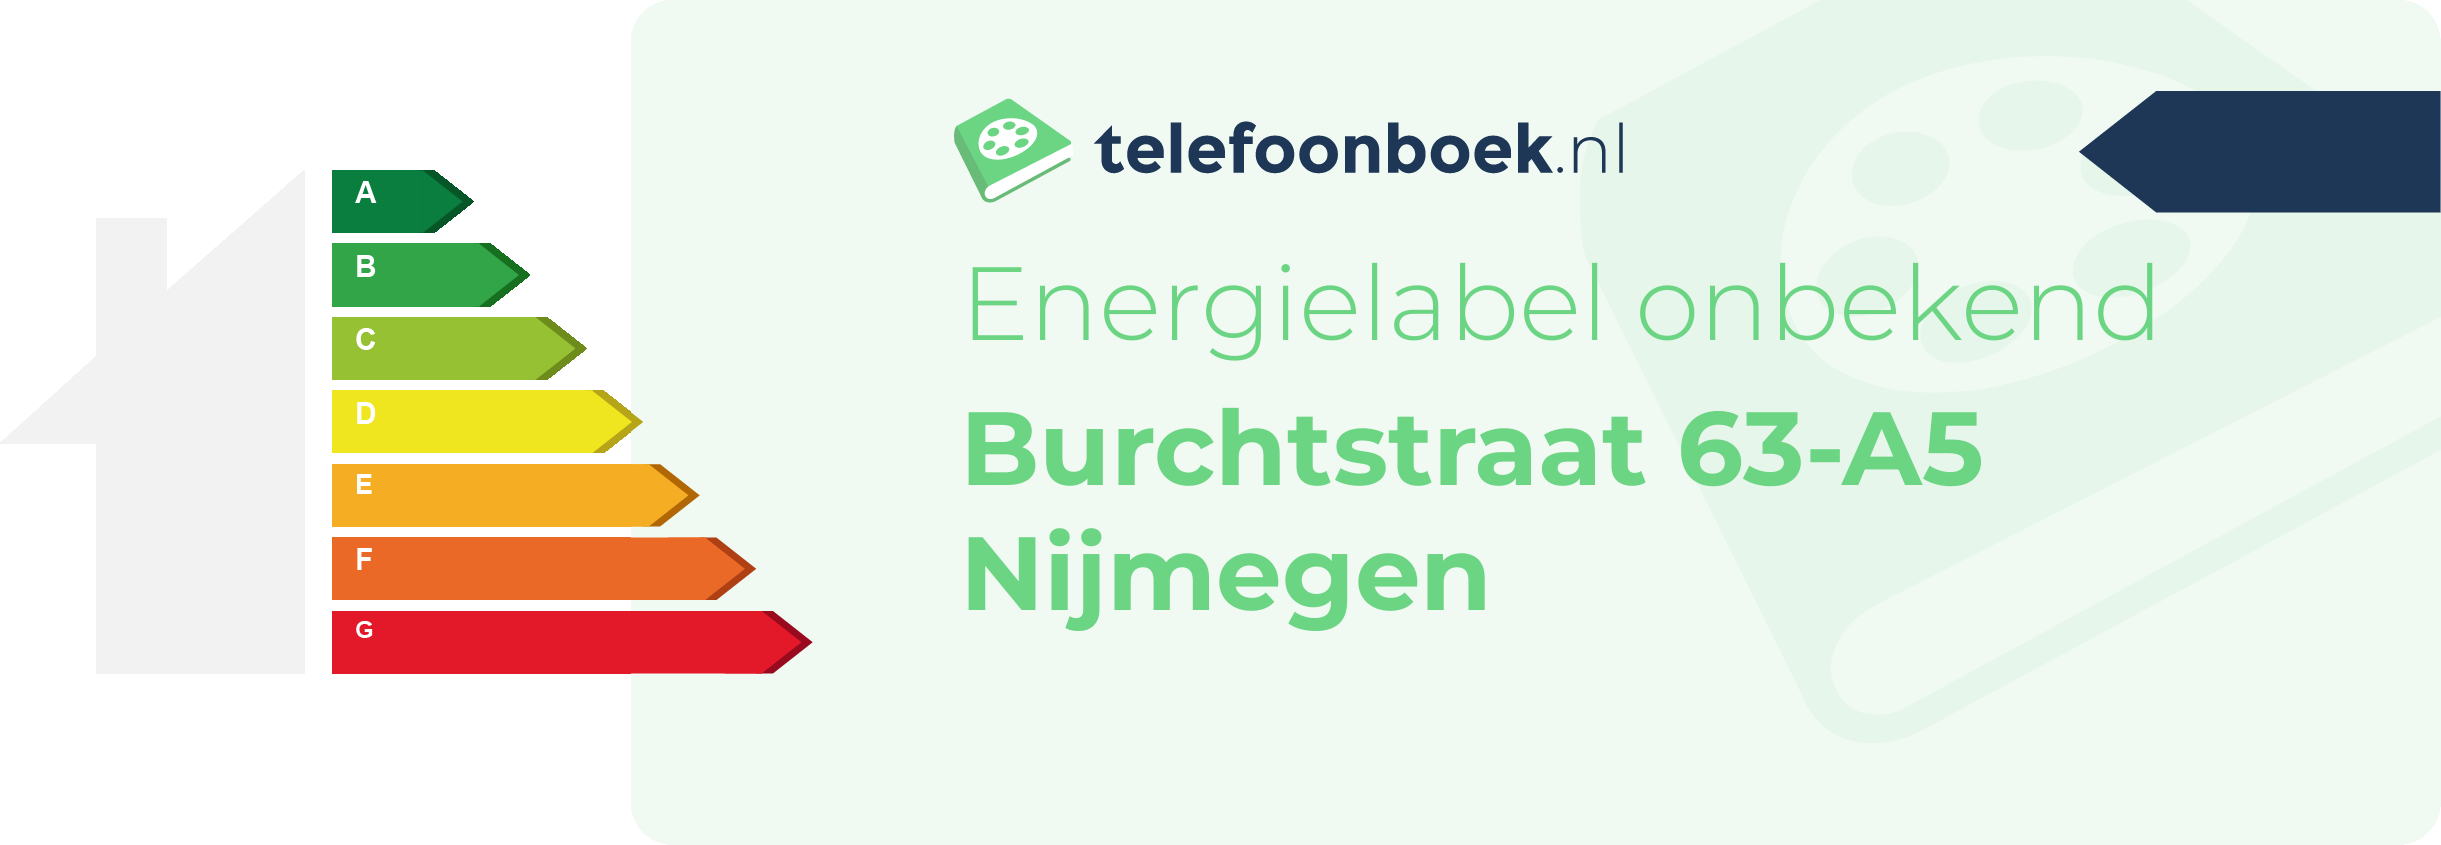 Energielabel Burchtstraat 63-A5 Nijmegen